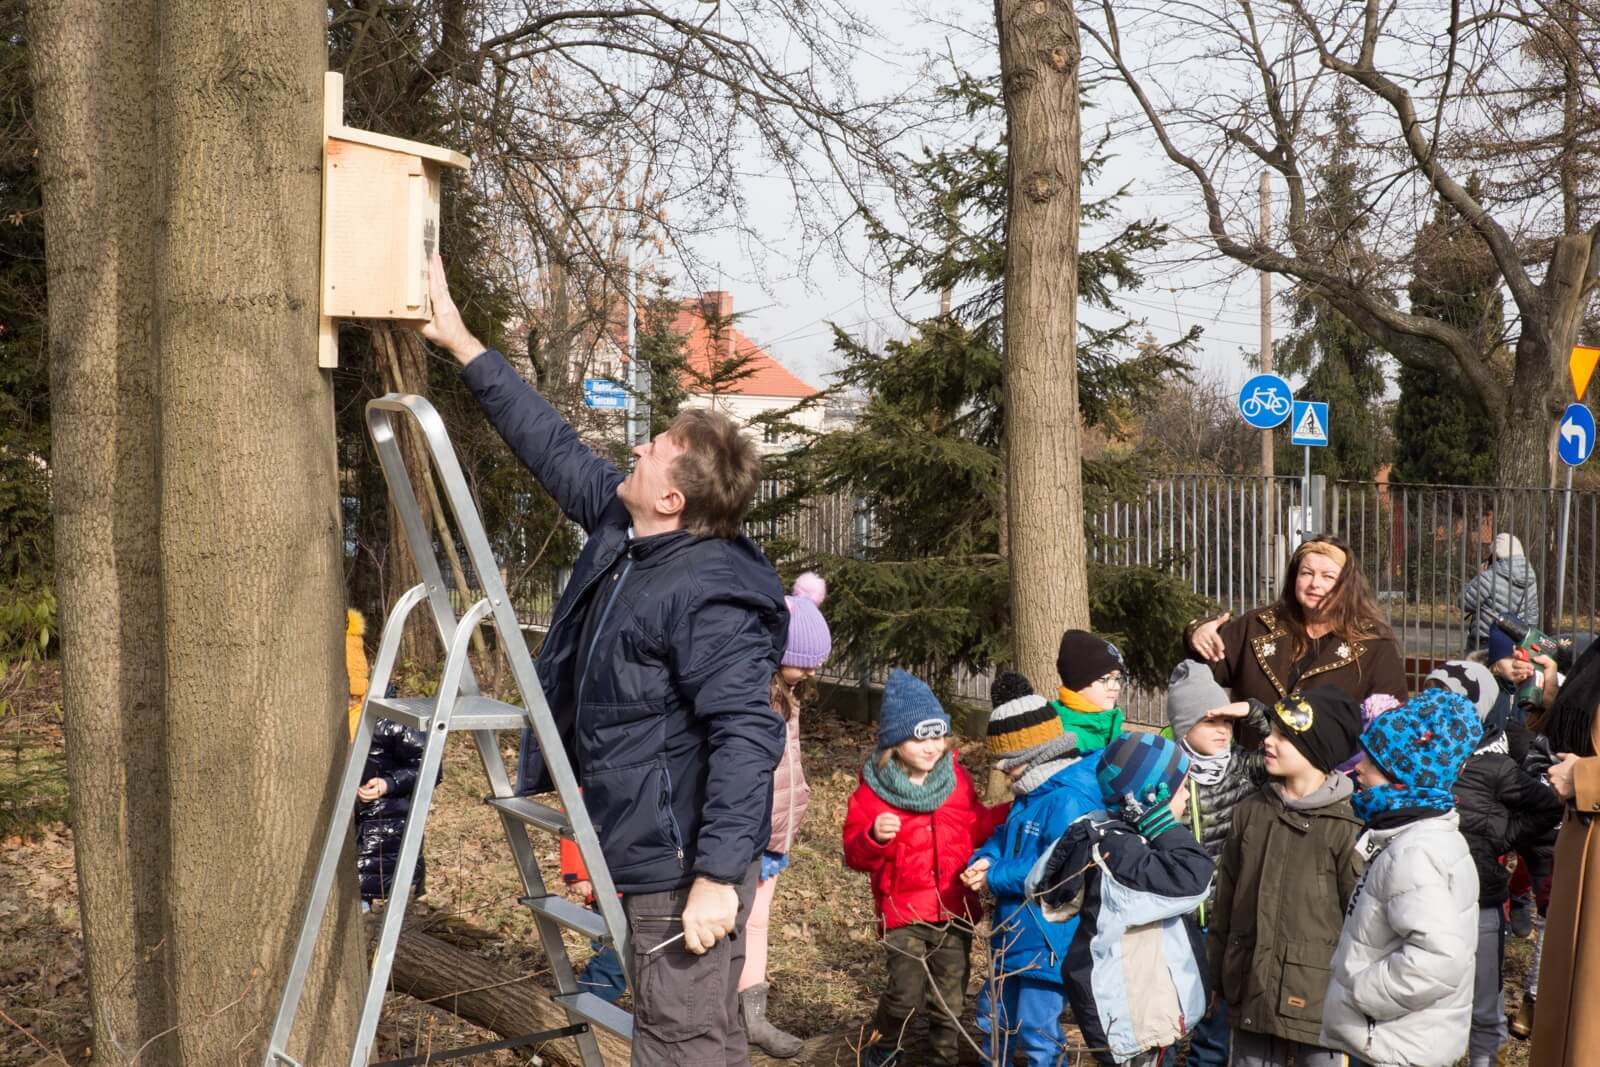 Akcja rozdawania budek cieszy się w Katowicach dużą popularnością